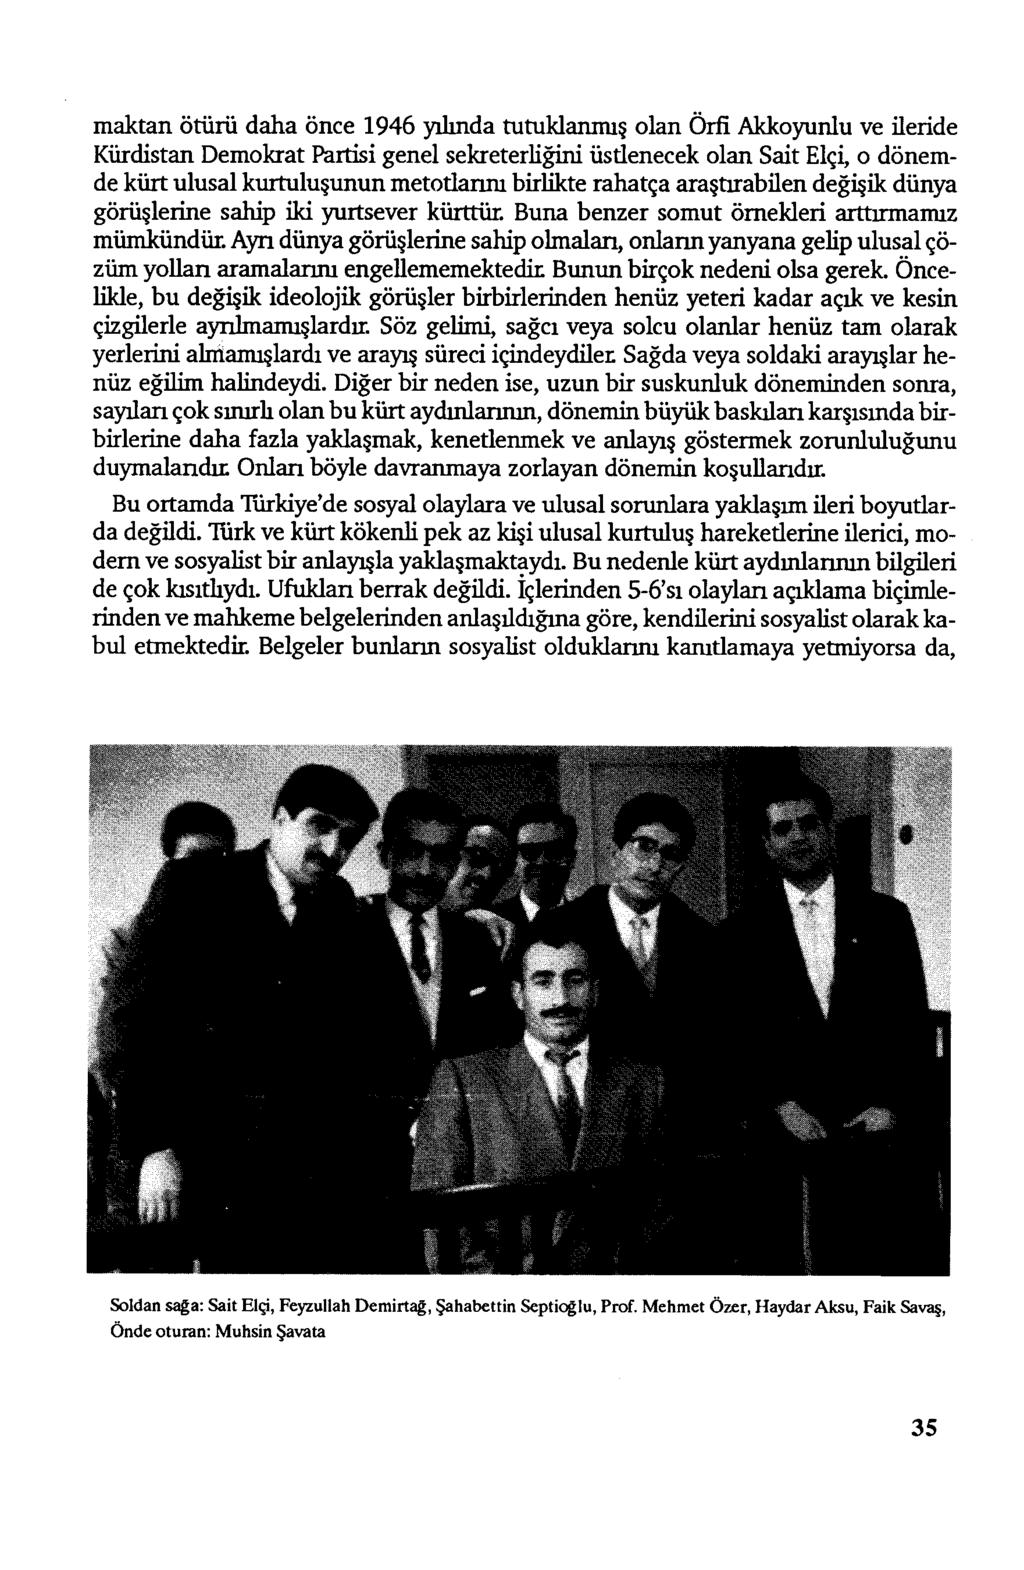 maktan ötürü daha önce 1946 yılında tutuklanmış olan Örfi Akkoyunlu ve ileride Kürdistan Demokrat Partisi genel sekreterliğini üstlenecek olan Sait Elçi, o dönemde kürt ulusal kurtuluşunun metodamu